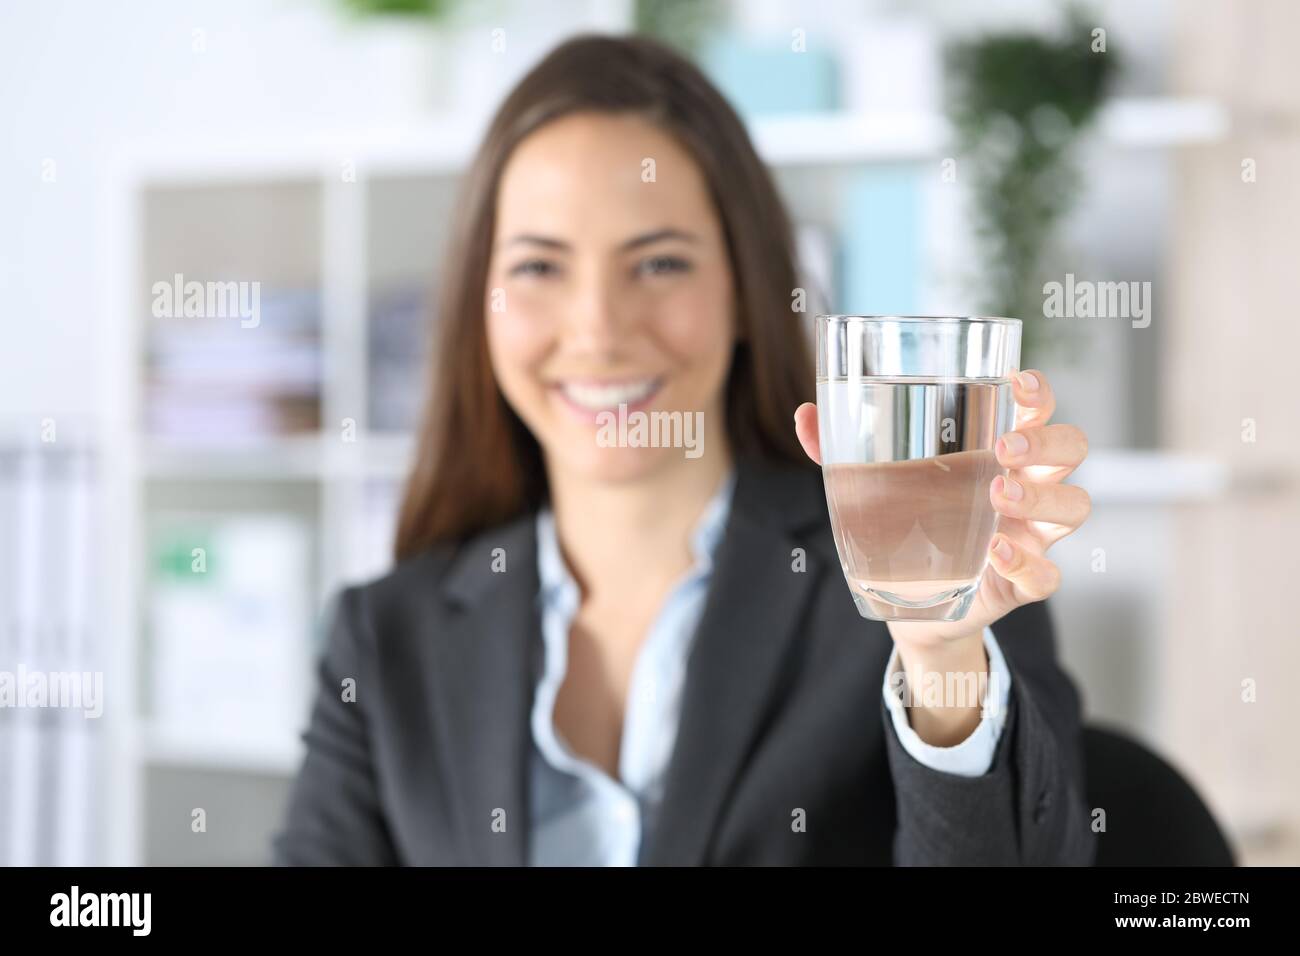 Vue de face d'une femme de direction heureuse montrant un verre d'eau assis sur un bureau Banque D'Images